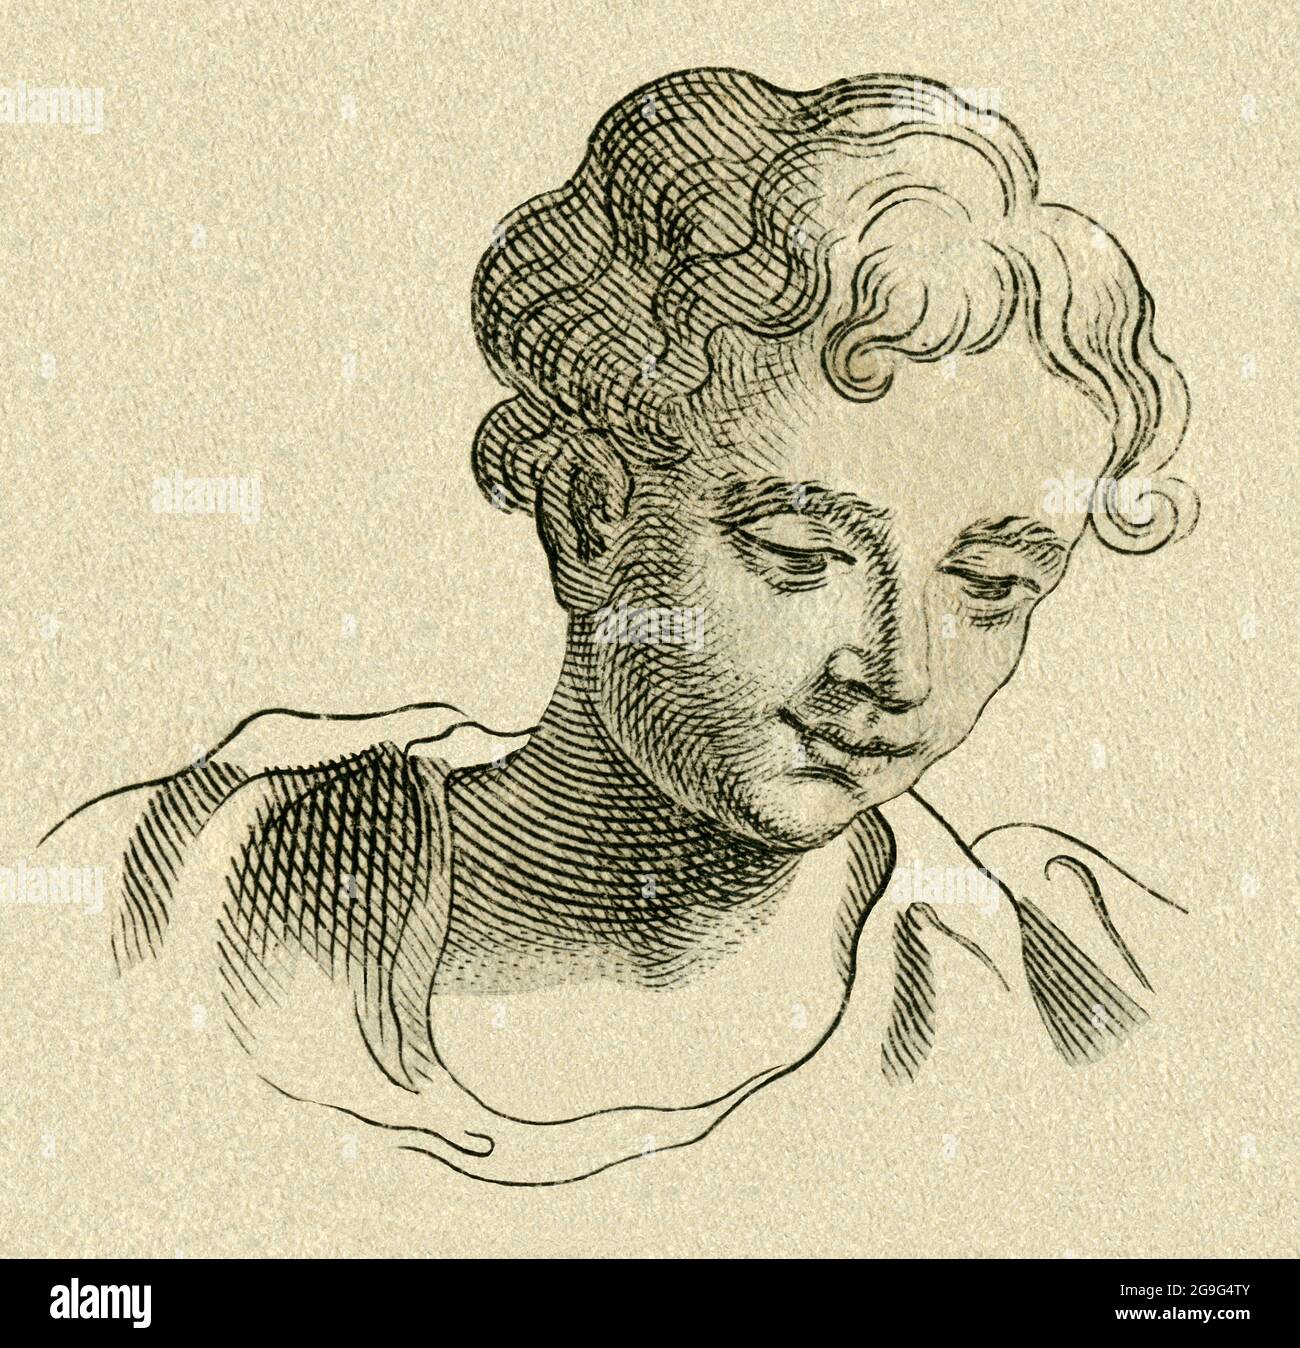 Europa, Germania, medicina, studio ritratto di un giovane, incisione copperplate, intorno al 1700, IL DIRITTO D'AUTORE DELL'ARTISTA NON DEVE ESSERE ELIMINATO Foto Stock